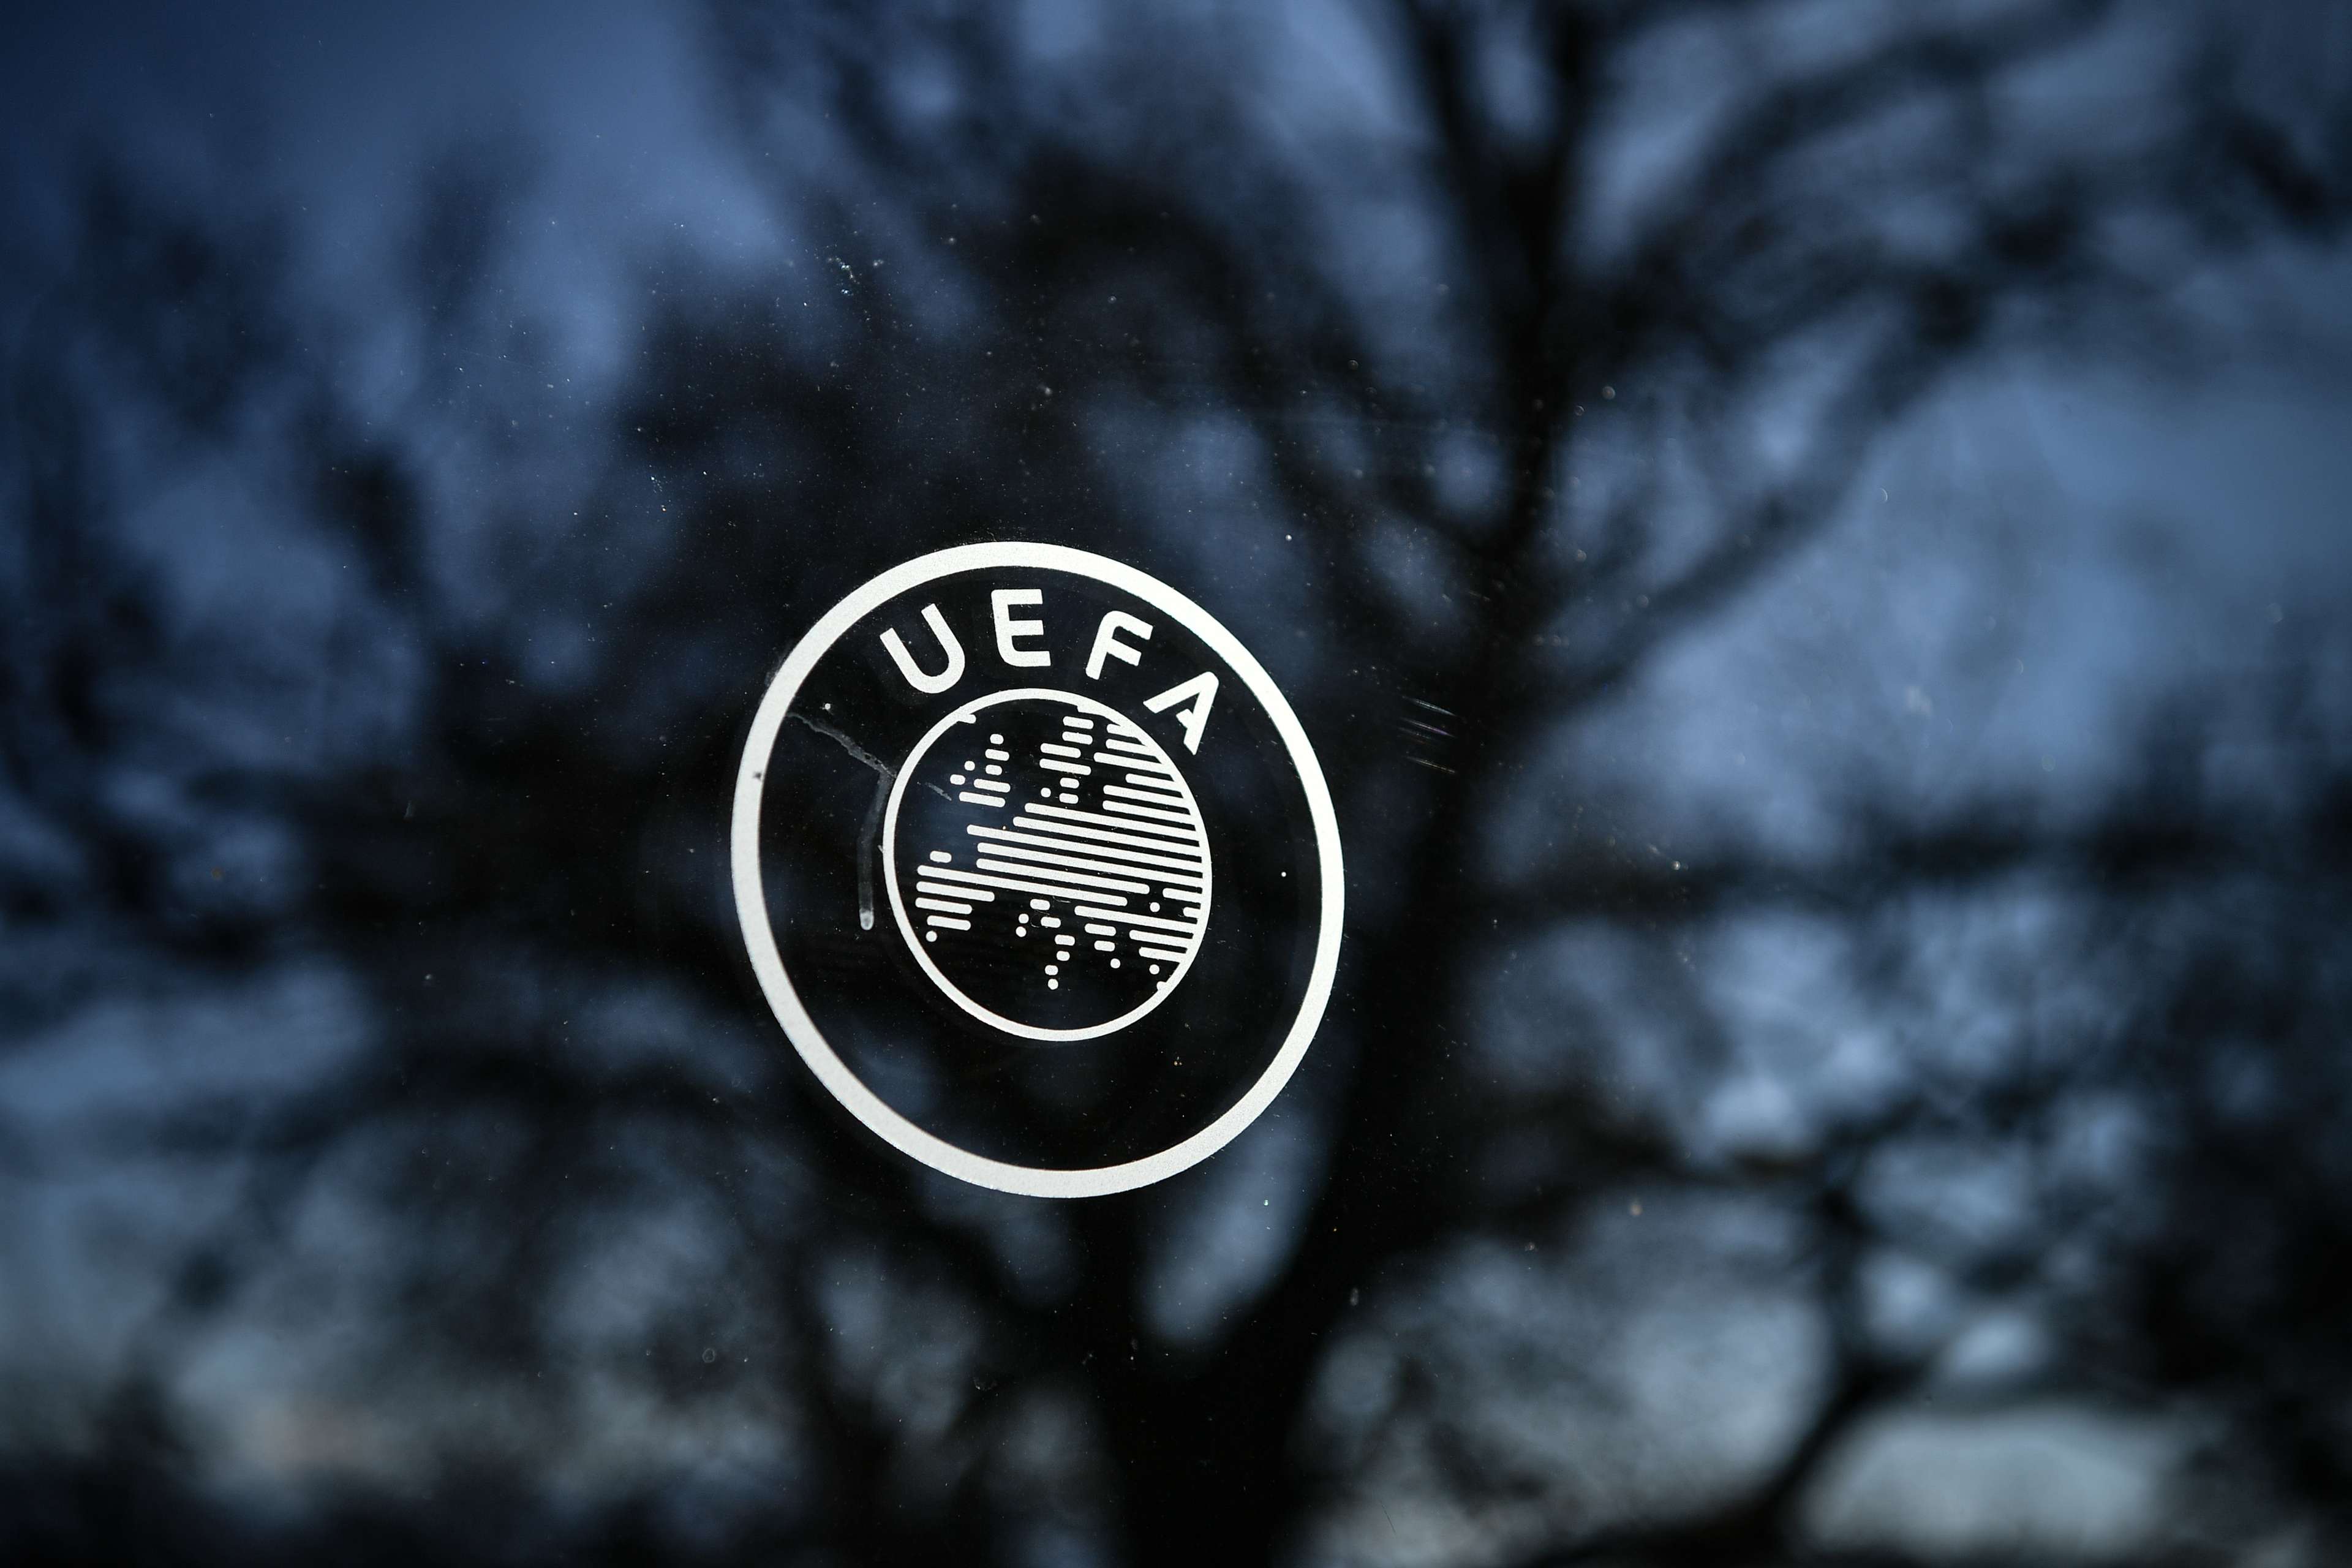 UEFA logo view nyon